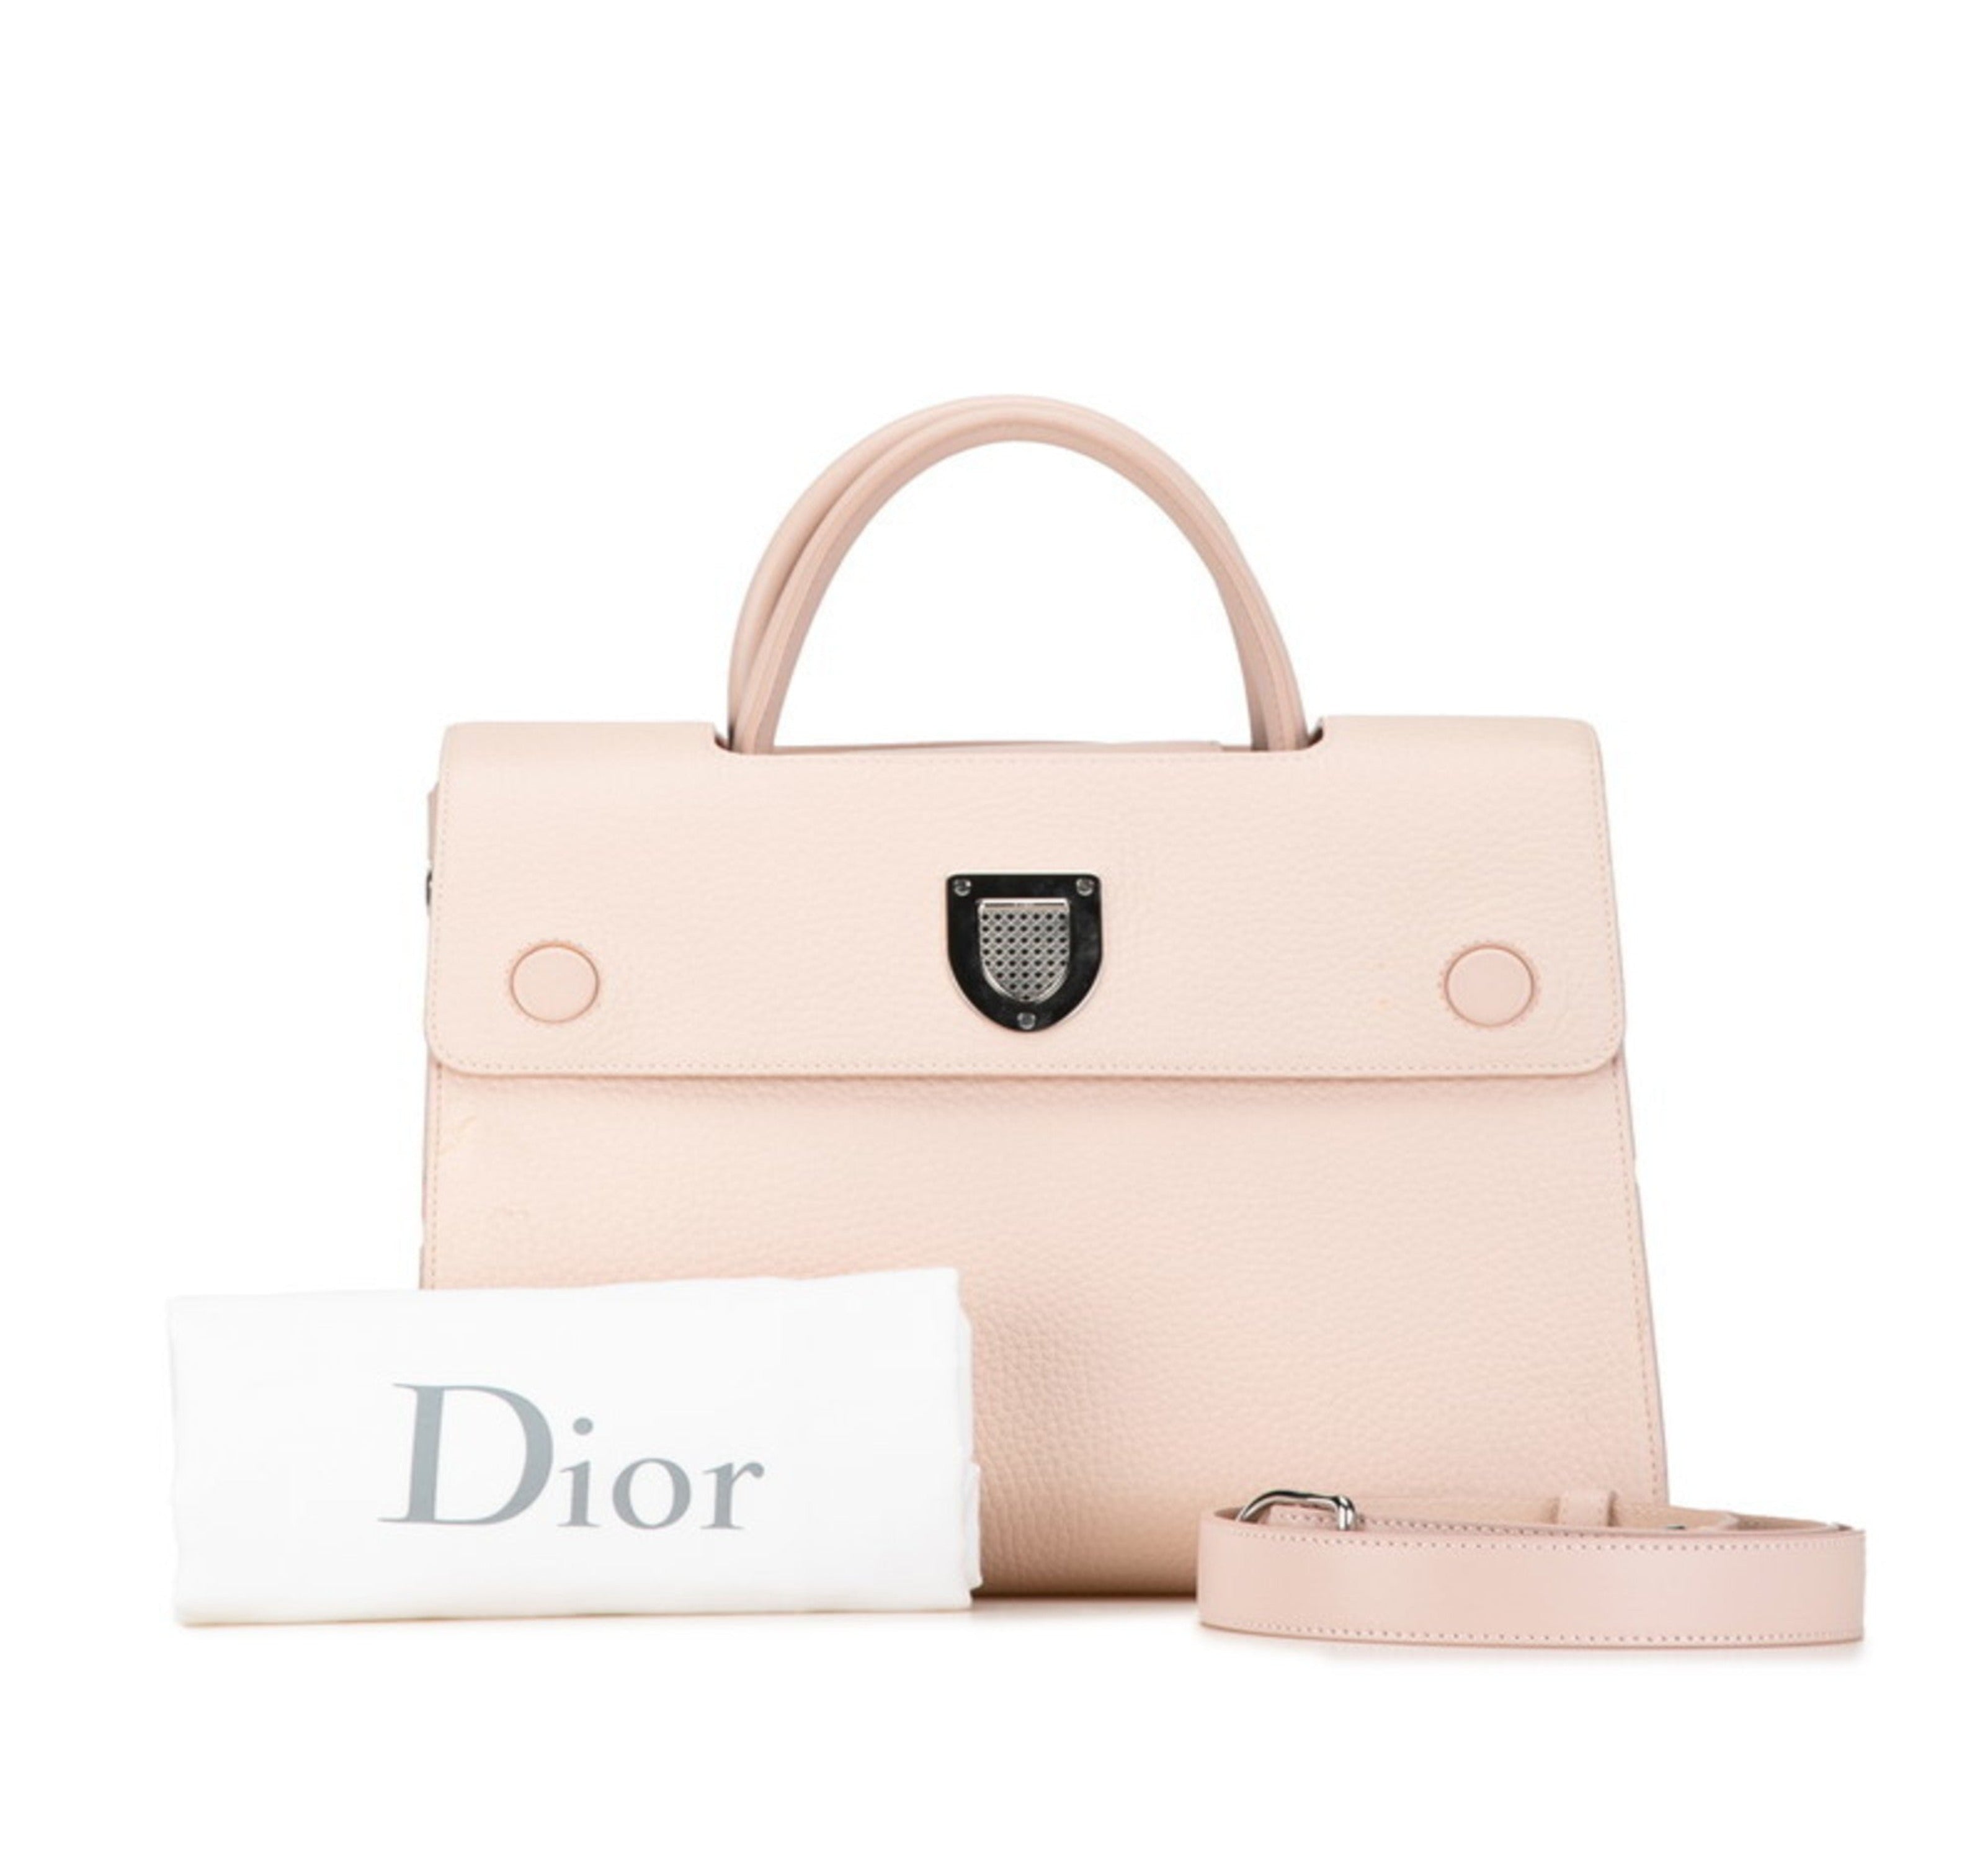 Christian Dior Dior Ever Handbag Shoulder Bag M7001PTLW Pink Beige Leather Women's-0